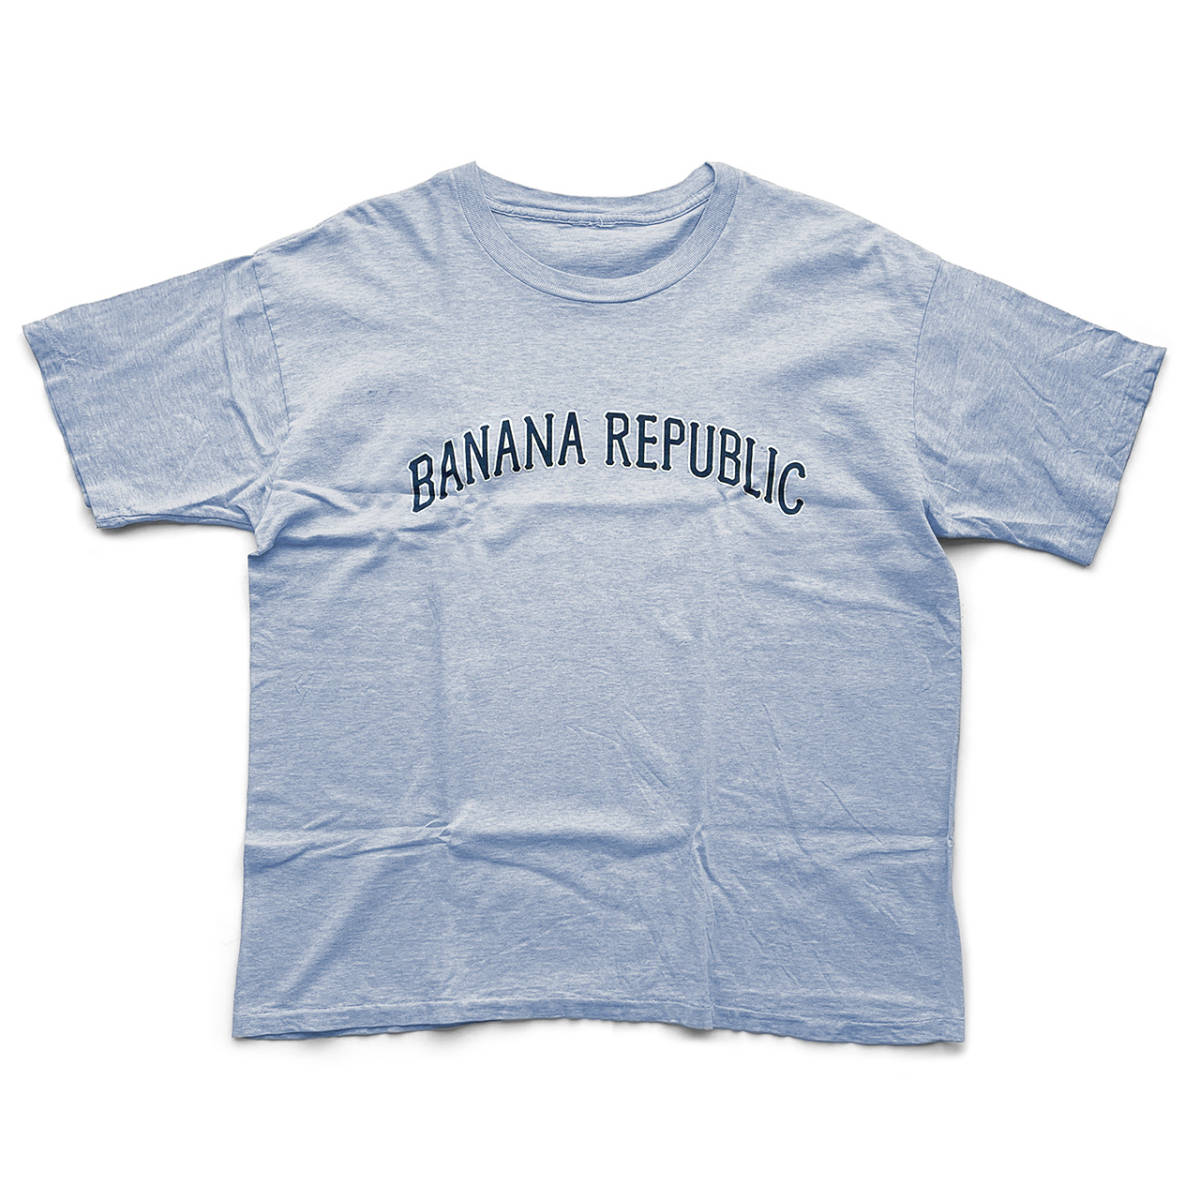 公式】 レア 80年代 ポケット付き 半袖Tシャツ ホワイト 白 L Banana Republic) Republic (Banana 送料無料  3,490円新品 バナナ・リパブリック 世界地図 プリントTシャツ バナリパ ホワイト バナナリパブリック